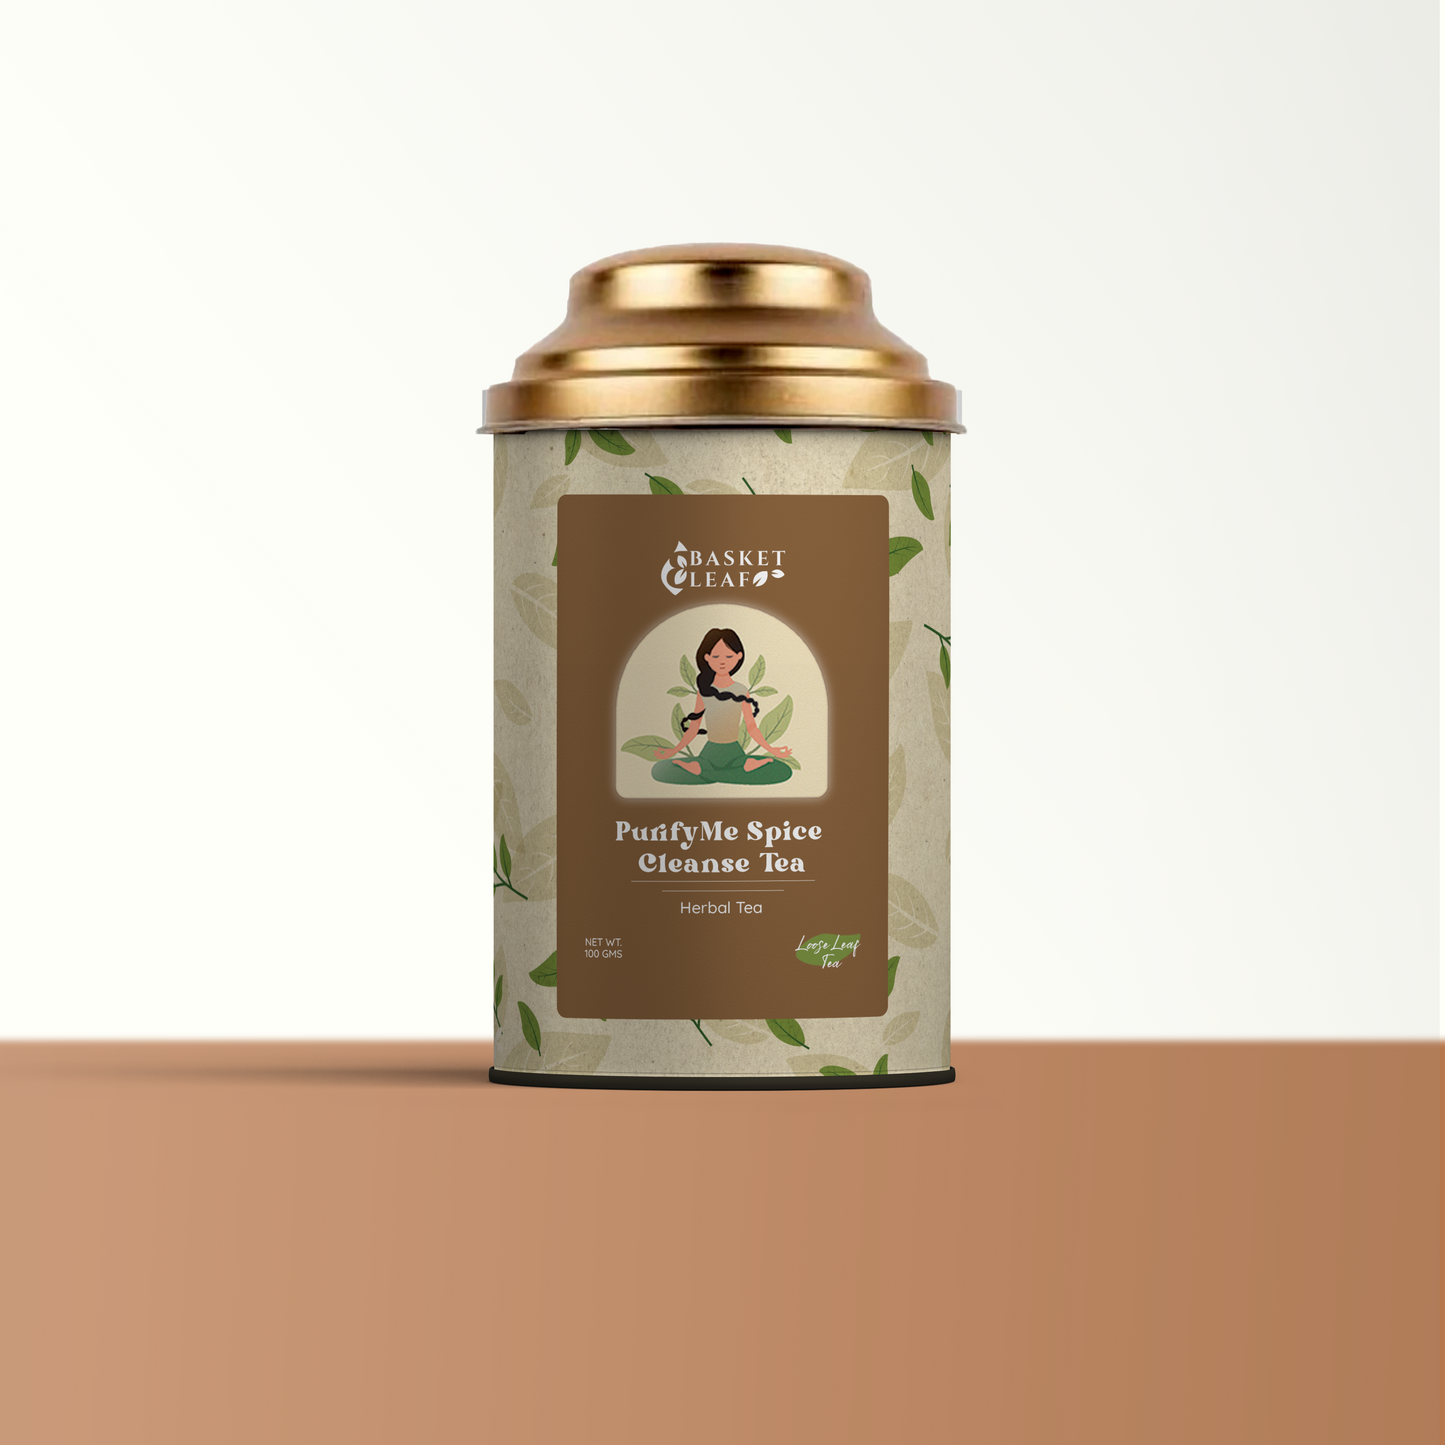 PurifyMe Spice Cleanse Tea - Basket Leaf